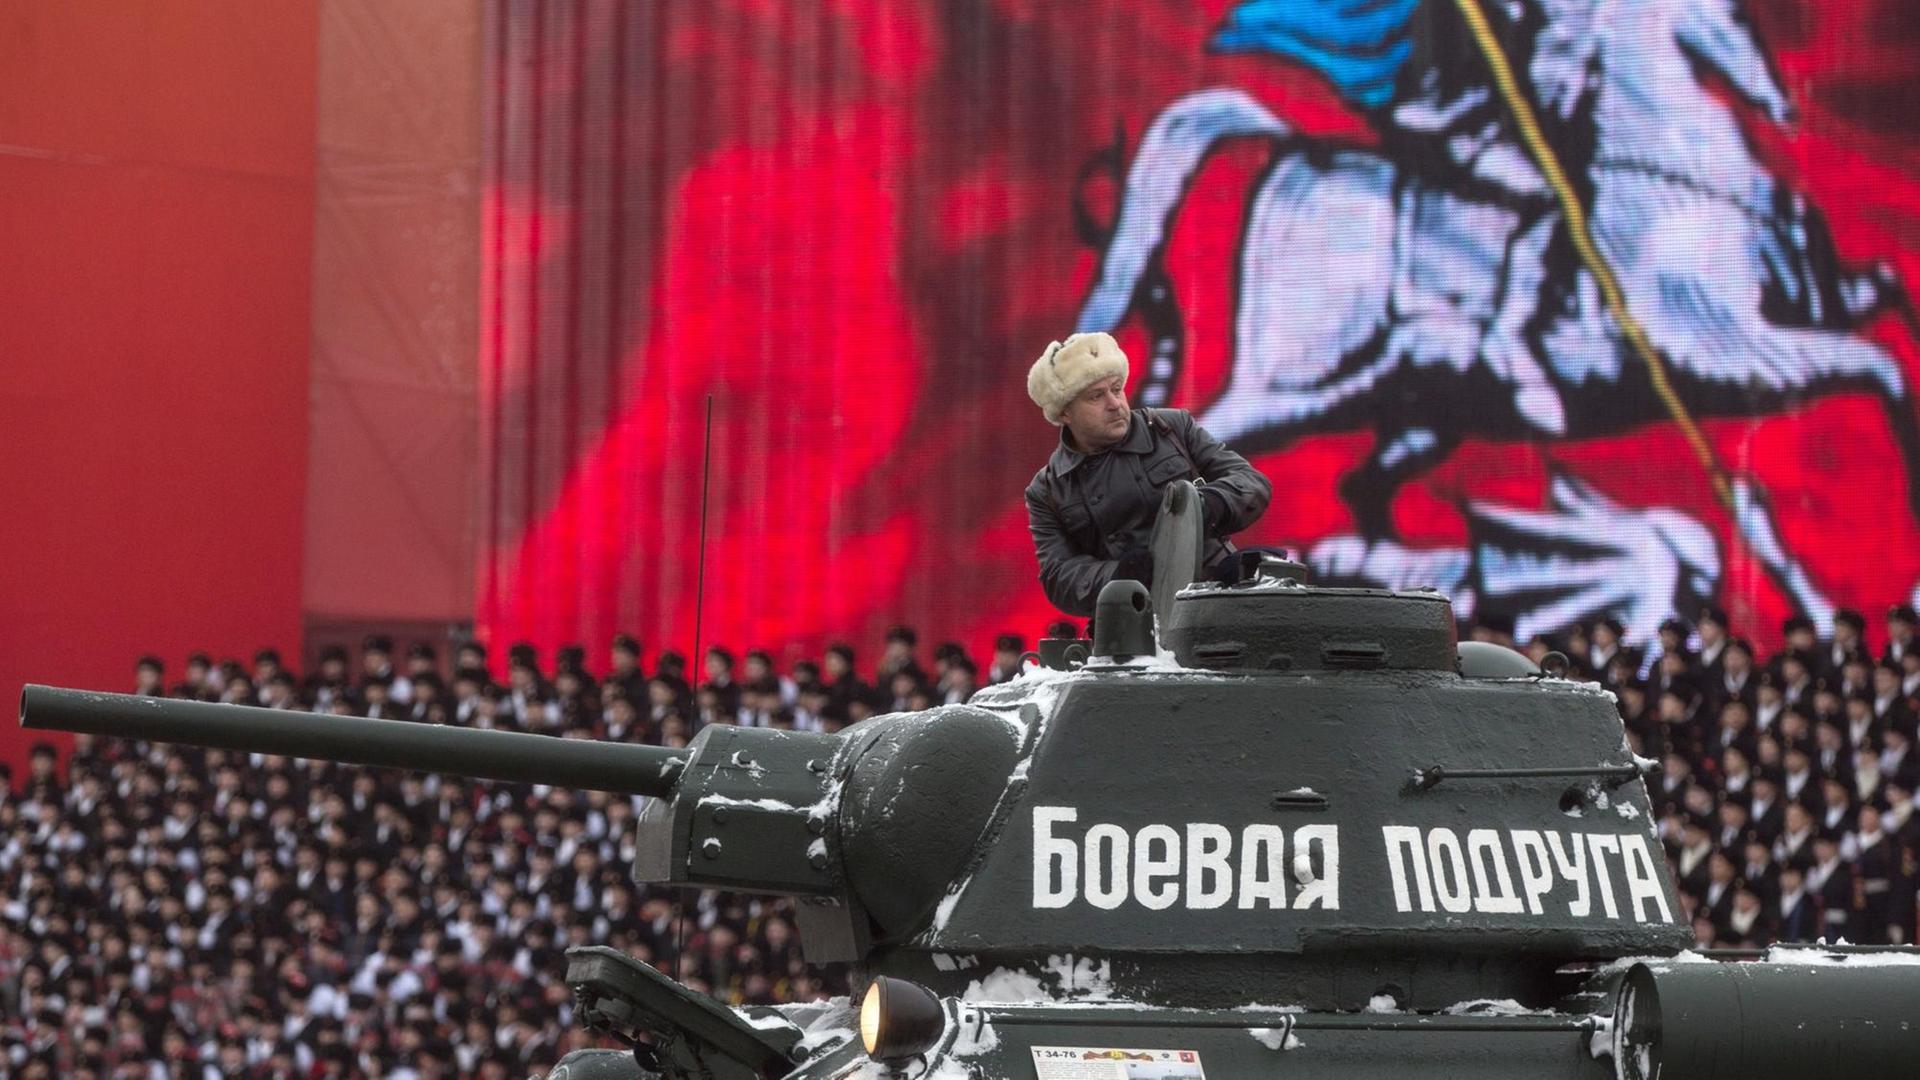 Soldaten in Uniformen des Zweiten Weltkriegs in Moskau, Russland, bei einer Militärparade - gefeiert wurde der 75. Jahrestag einer historischen Parade vom 7. November 1941, als die Rote Armee an die Front des Zweiten Weltkriegs zog, um Moskau gegen die deutschen Angriff zu verteidigen. In 1941, the parade marked the 24th anniversary of the Bolshevik Revolution.